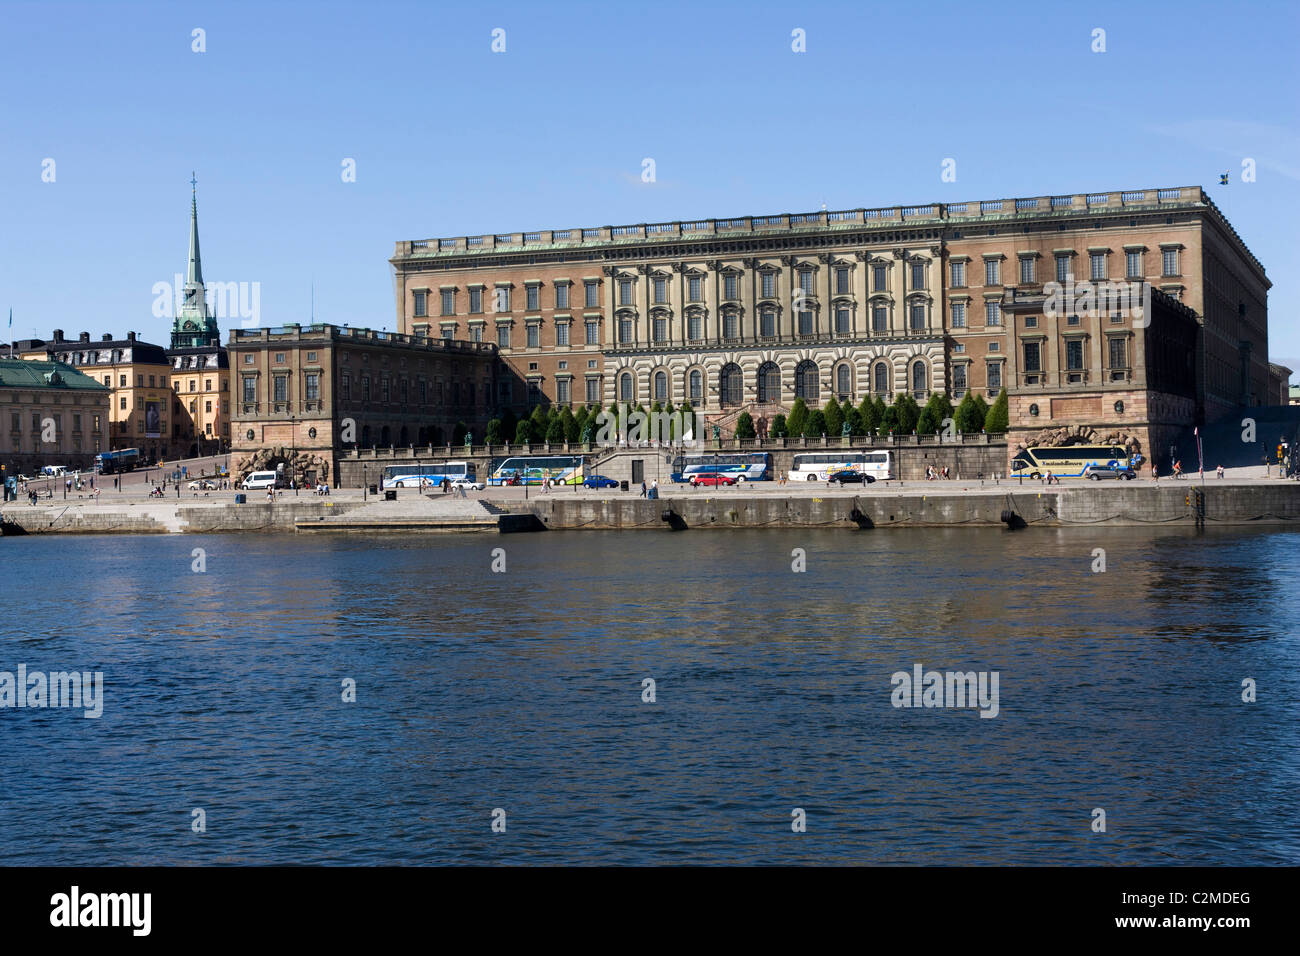 Royal Palace (Kungliga Slottet), Stockholm. Stock Photo